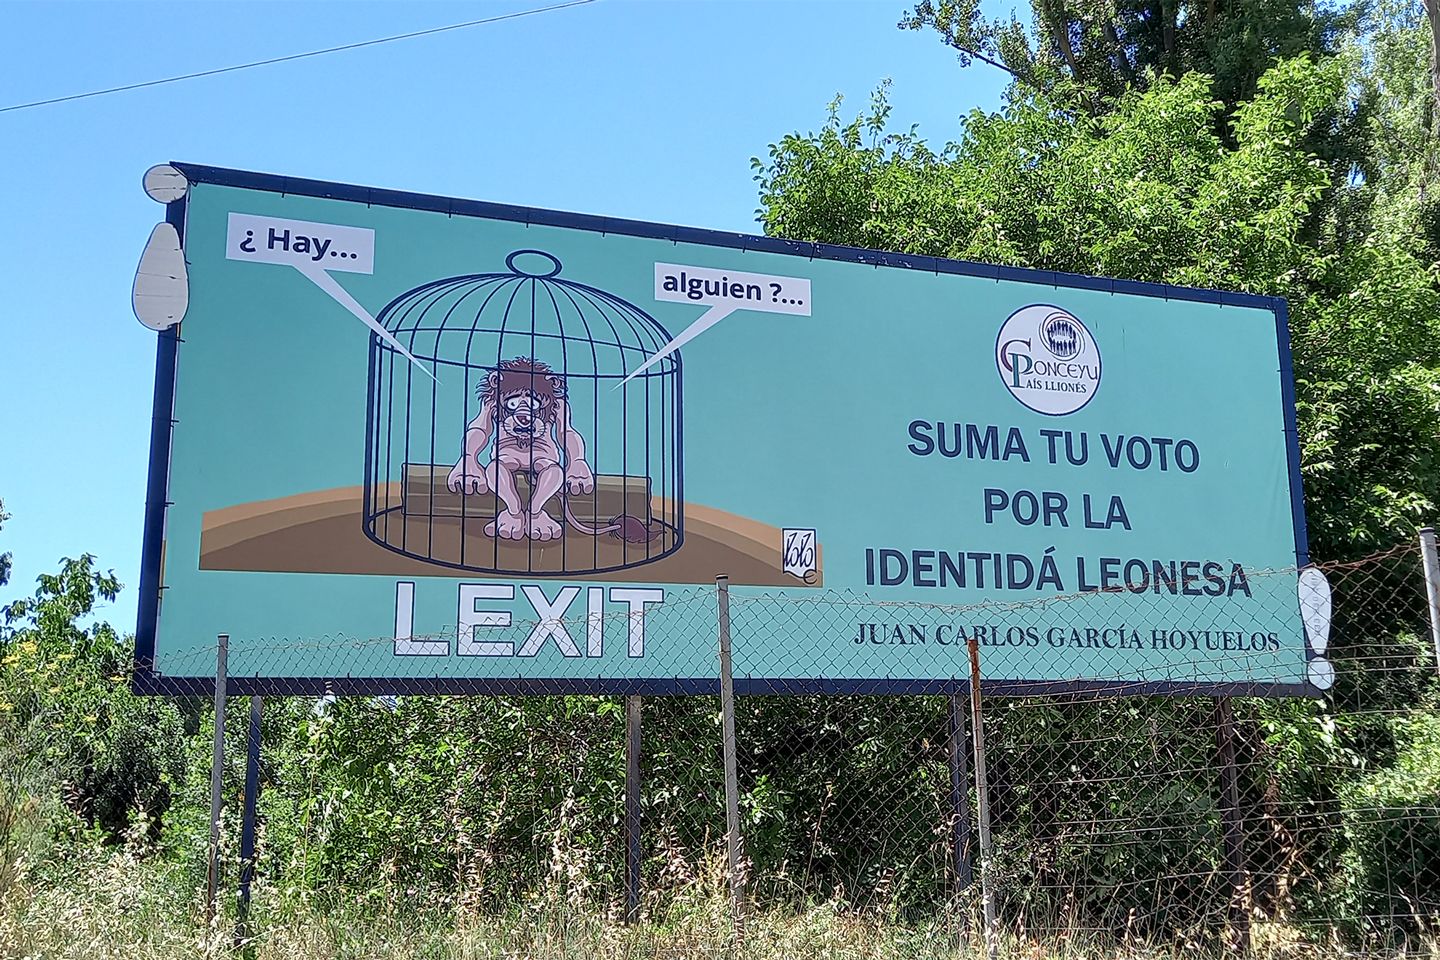 El Conceyu País Llionés y la Xuntanza Leonesista piden el voto de León para la UPL